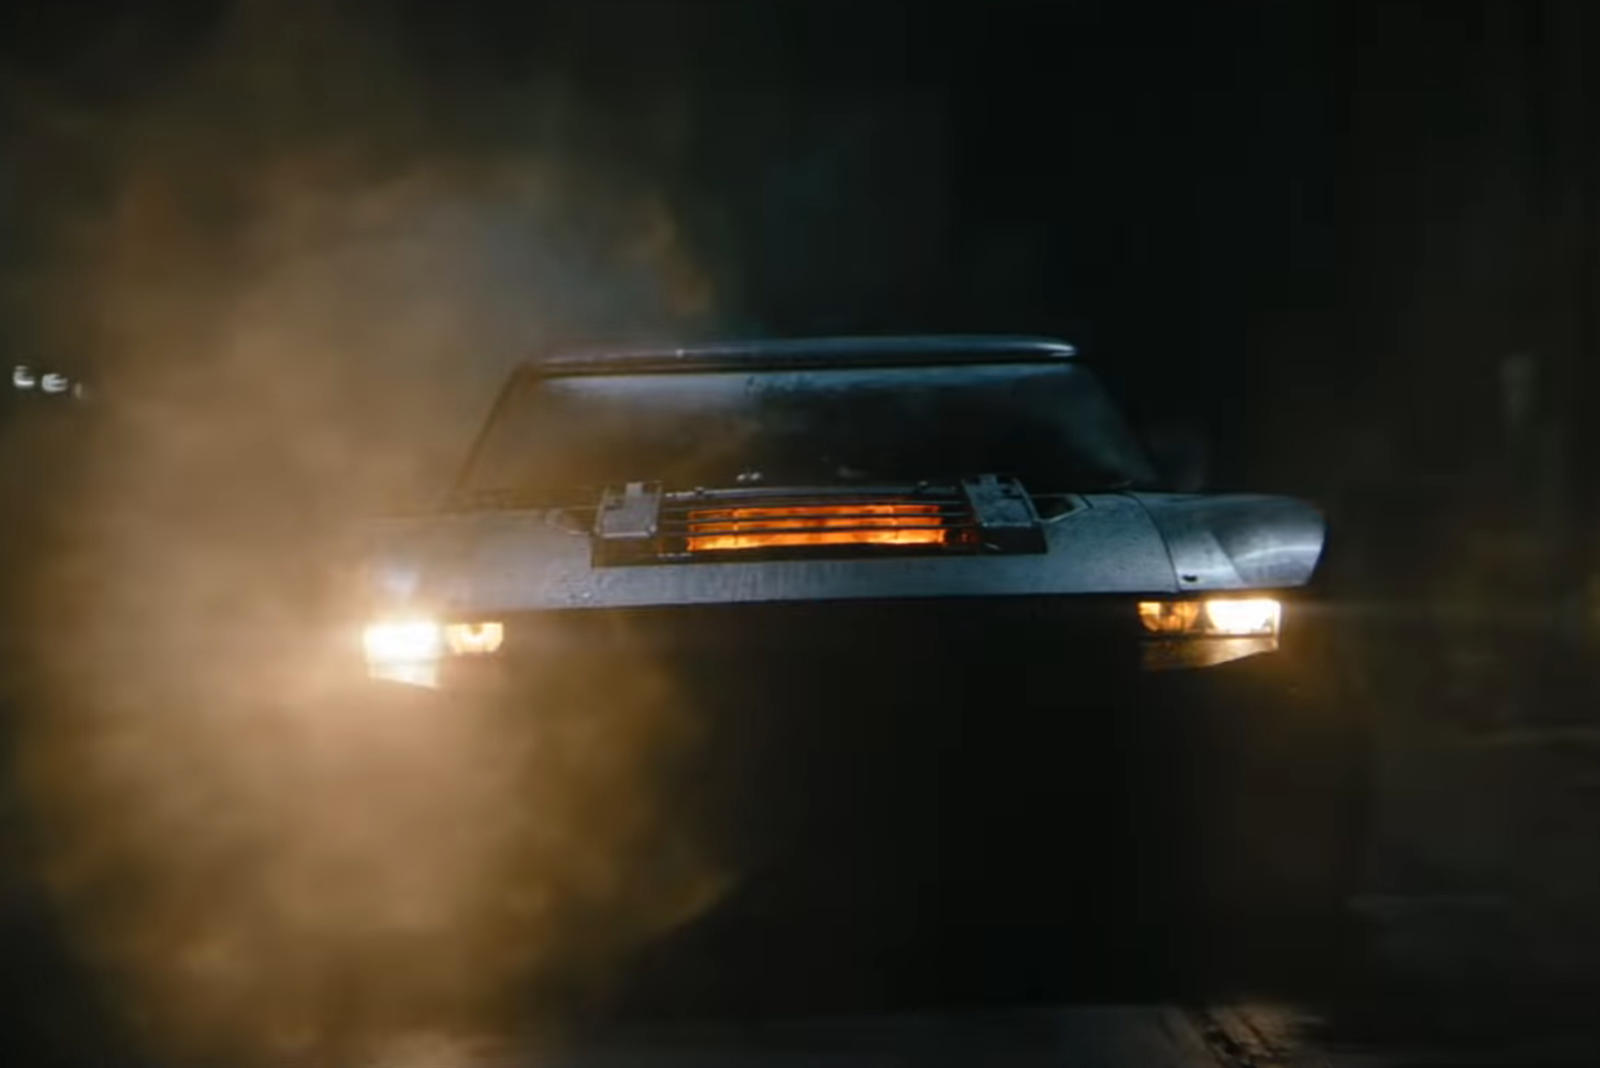 سيارة باتموبيل الجديدة تظهر في إعلان فيلم باتمان القادم 1